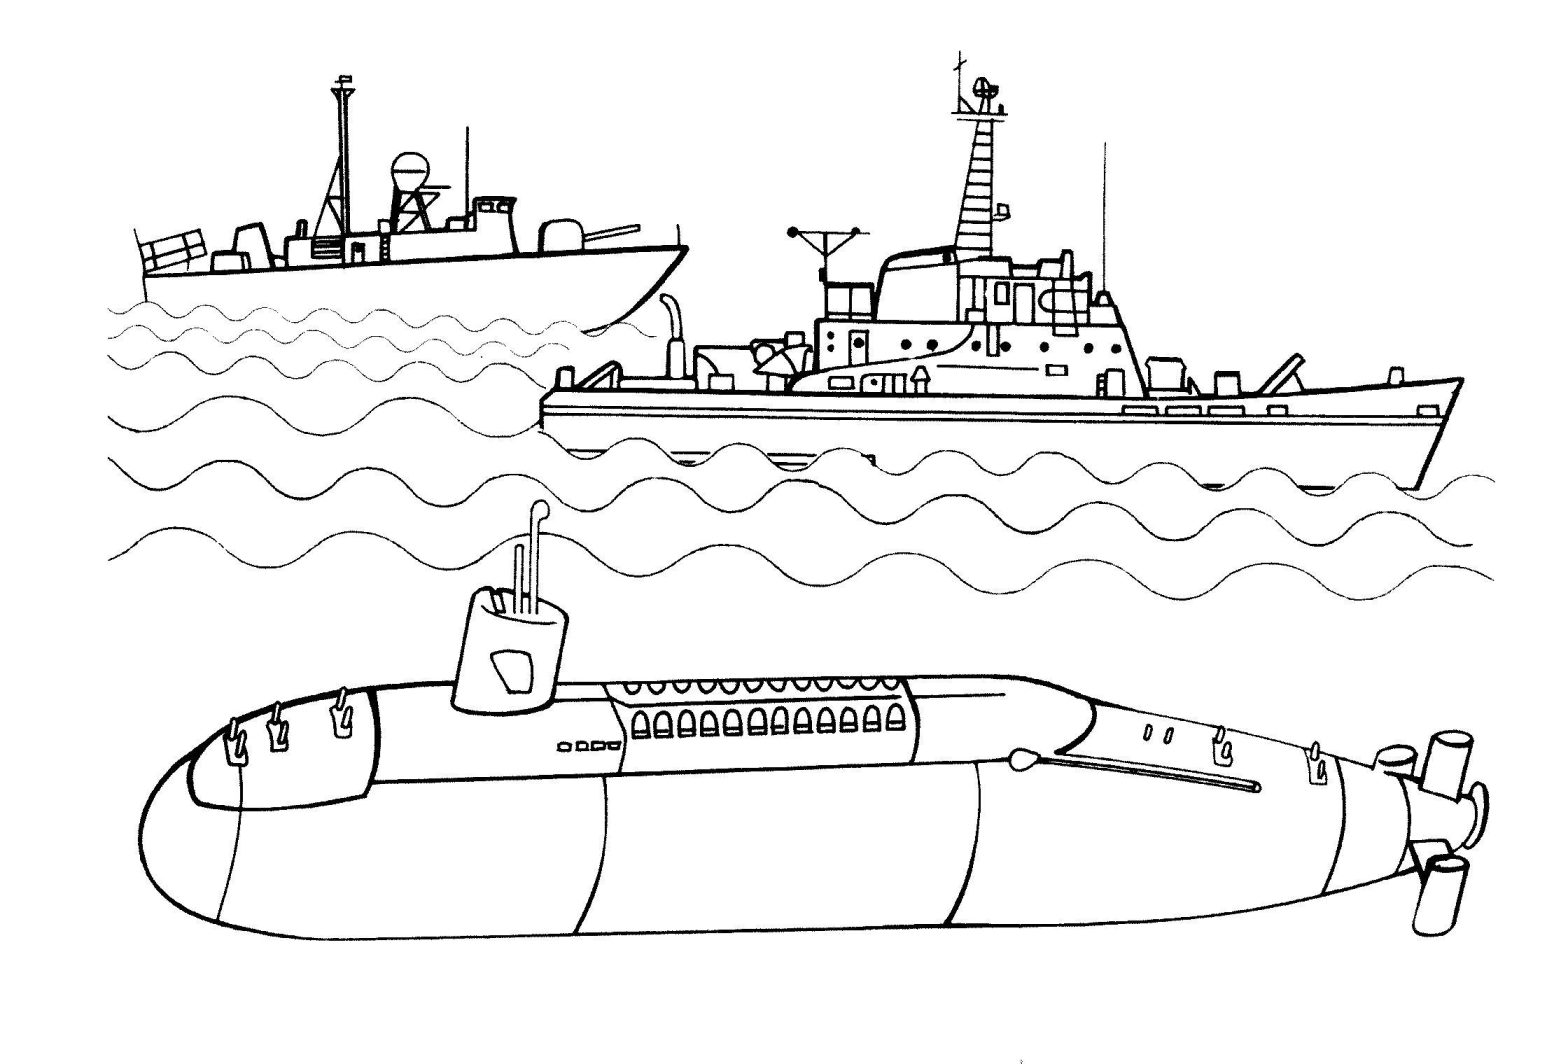 Раскраски кораблей и подводных лодок для мальчиков (корабли, лодки)